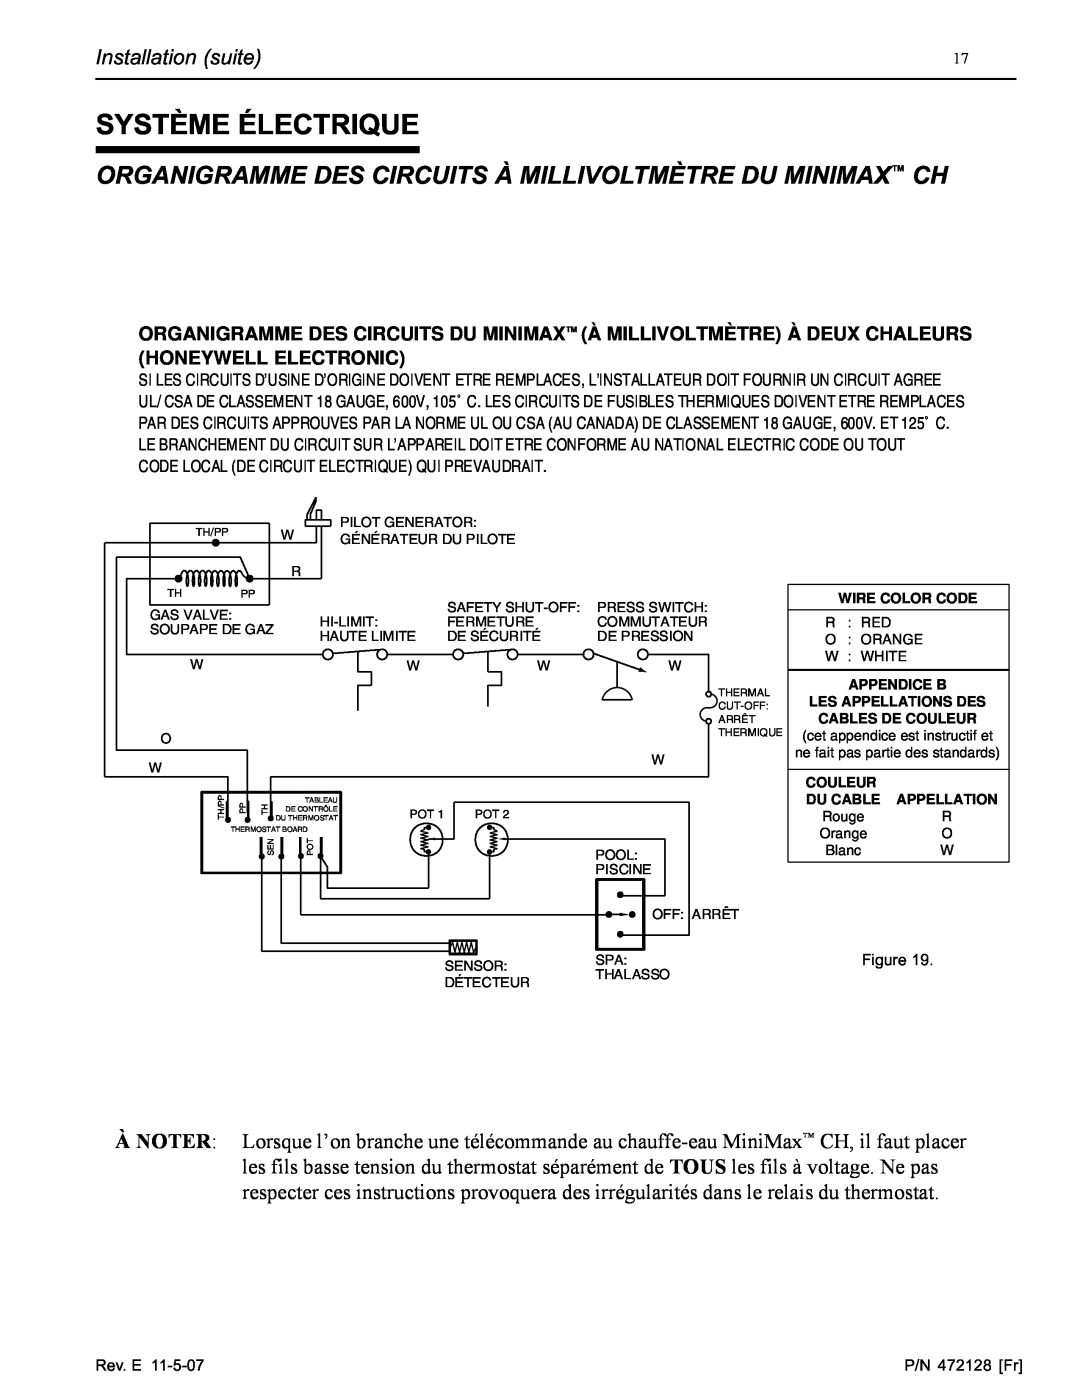 Pentair Hot Tub Système Électrique, Organigramme Des Circuits À Millivoltmètre Du Minimax Ch, Installation suite, Rev. E 